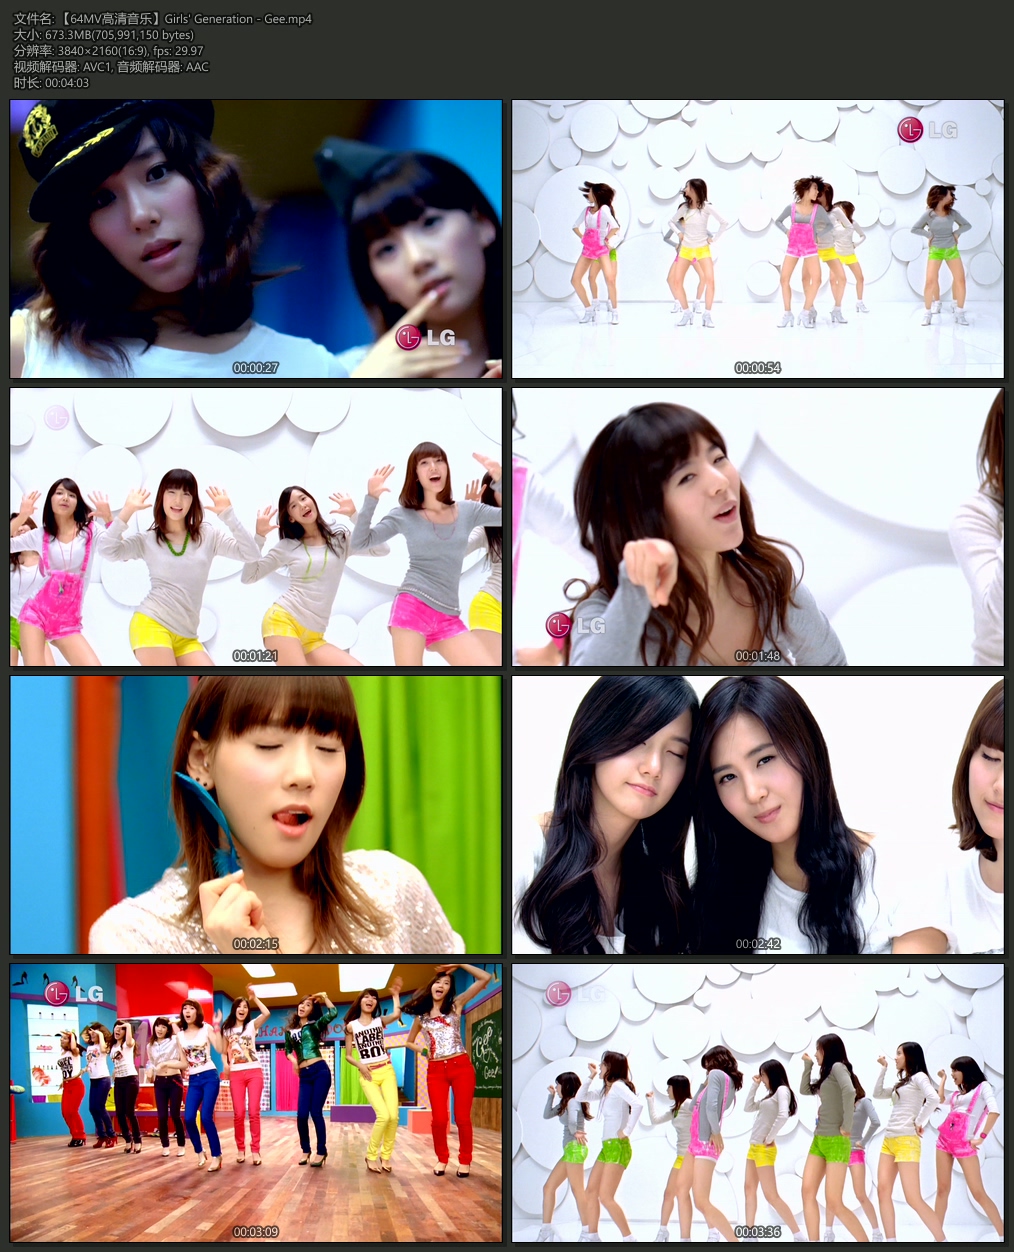 Girls Generation 《gee》 4k 2160p [1080p]高清mv Mp4 Mv下载 视频 最好的1080p高清mv下载网站 64码高清mv